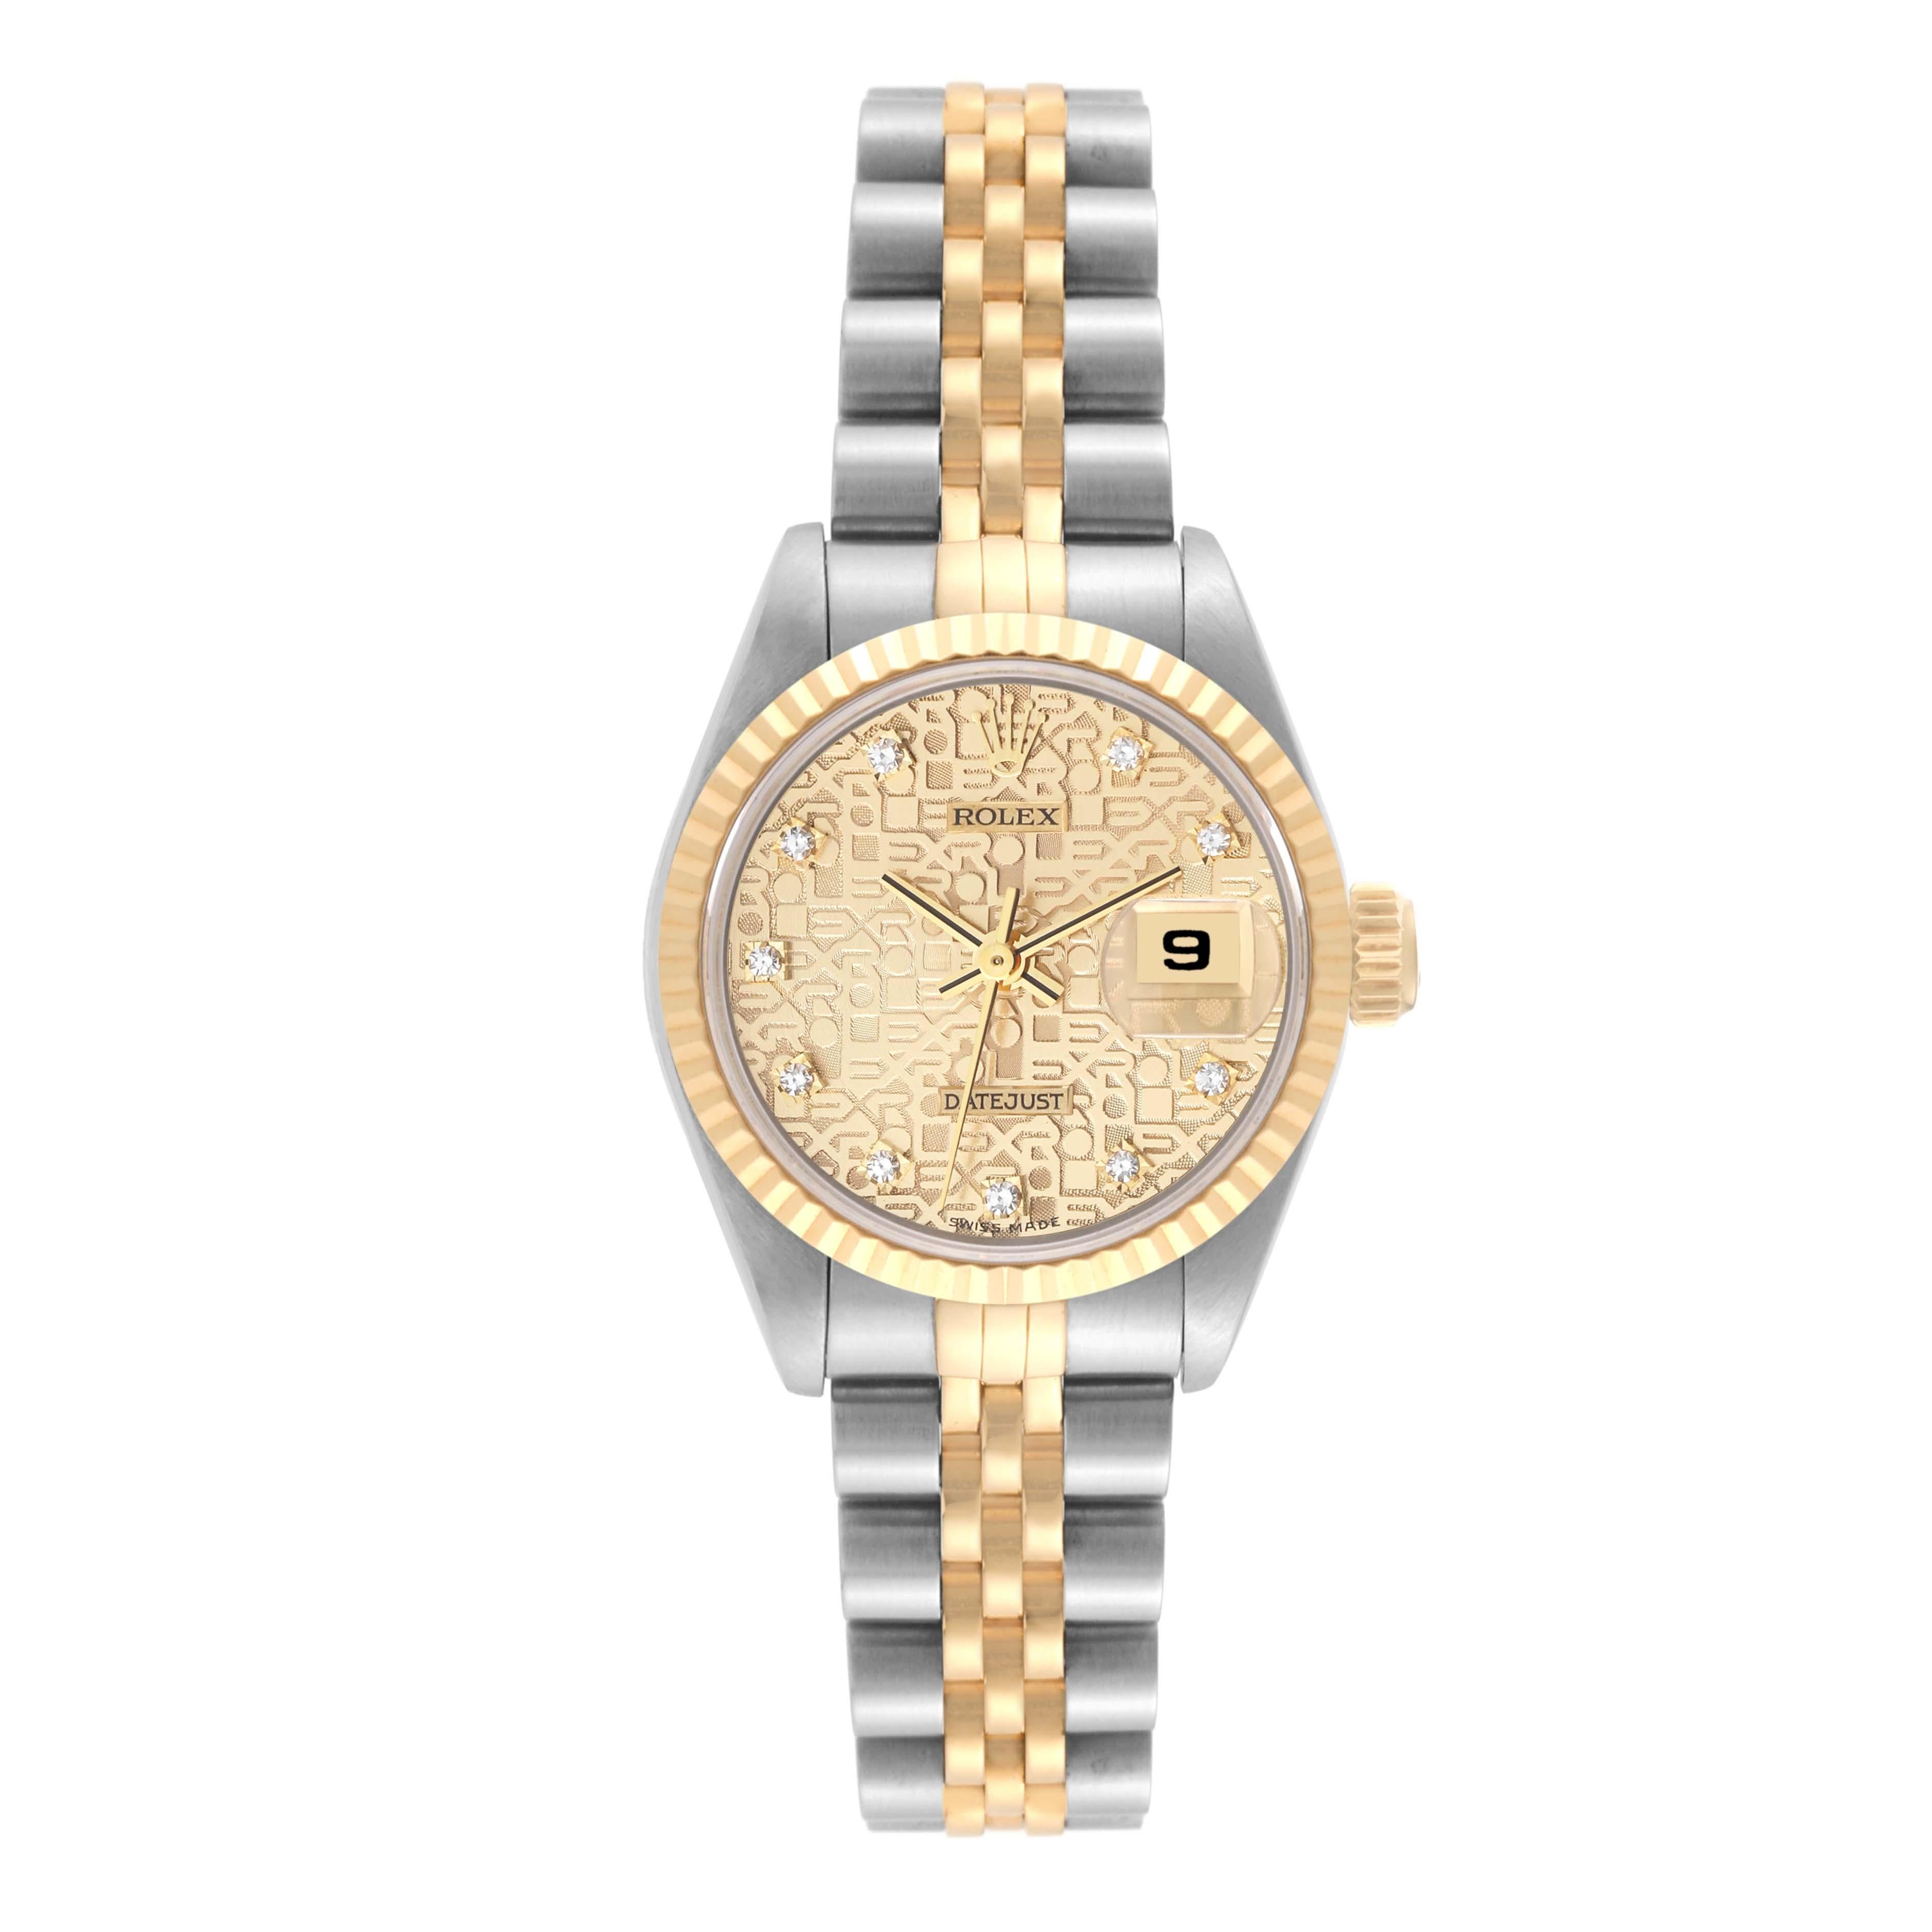 Rolex Datejust Anniversary Diamond Dial Steel Yellow Gold Damenuhr 69173. Offiziell zertifiziertes Chronometerwerk mit automatischem Aufzug. Austerngehäuse aus Edelstahl mit einem Durchmesser von 26.0 mm. Rolex Logo auf der Krone. Geriffelte Lünette